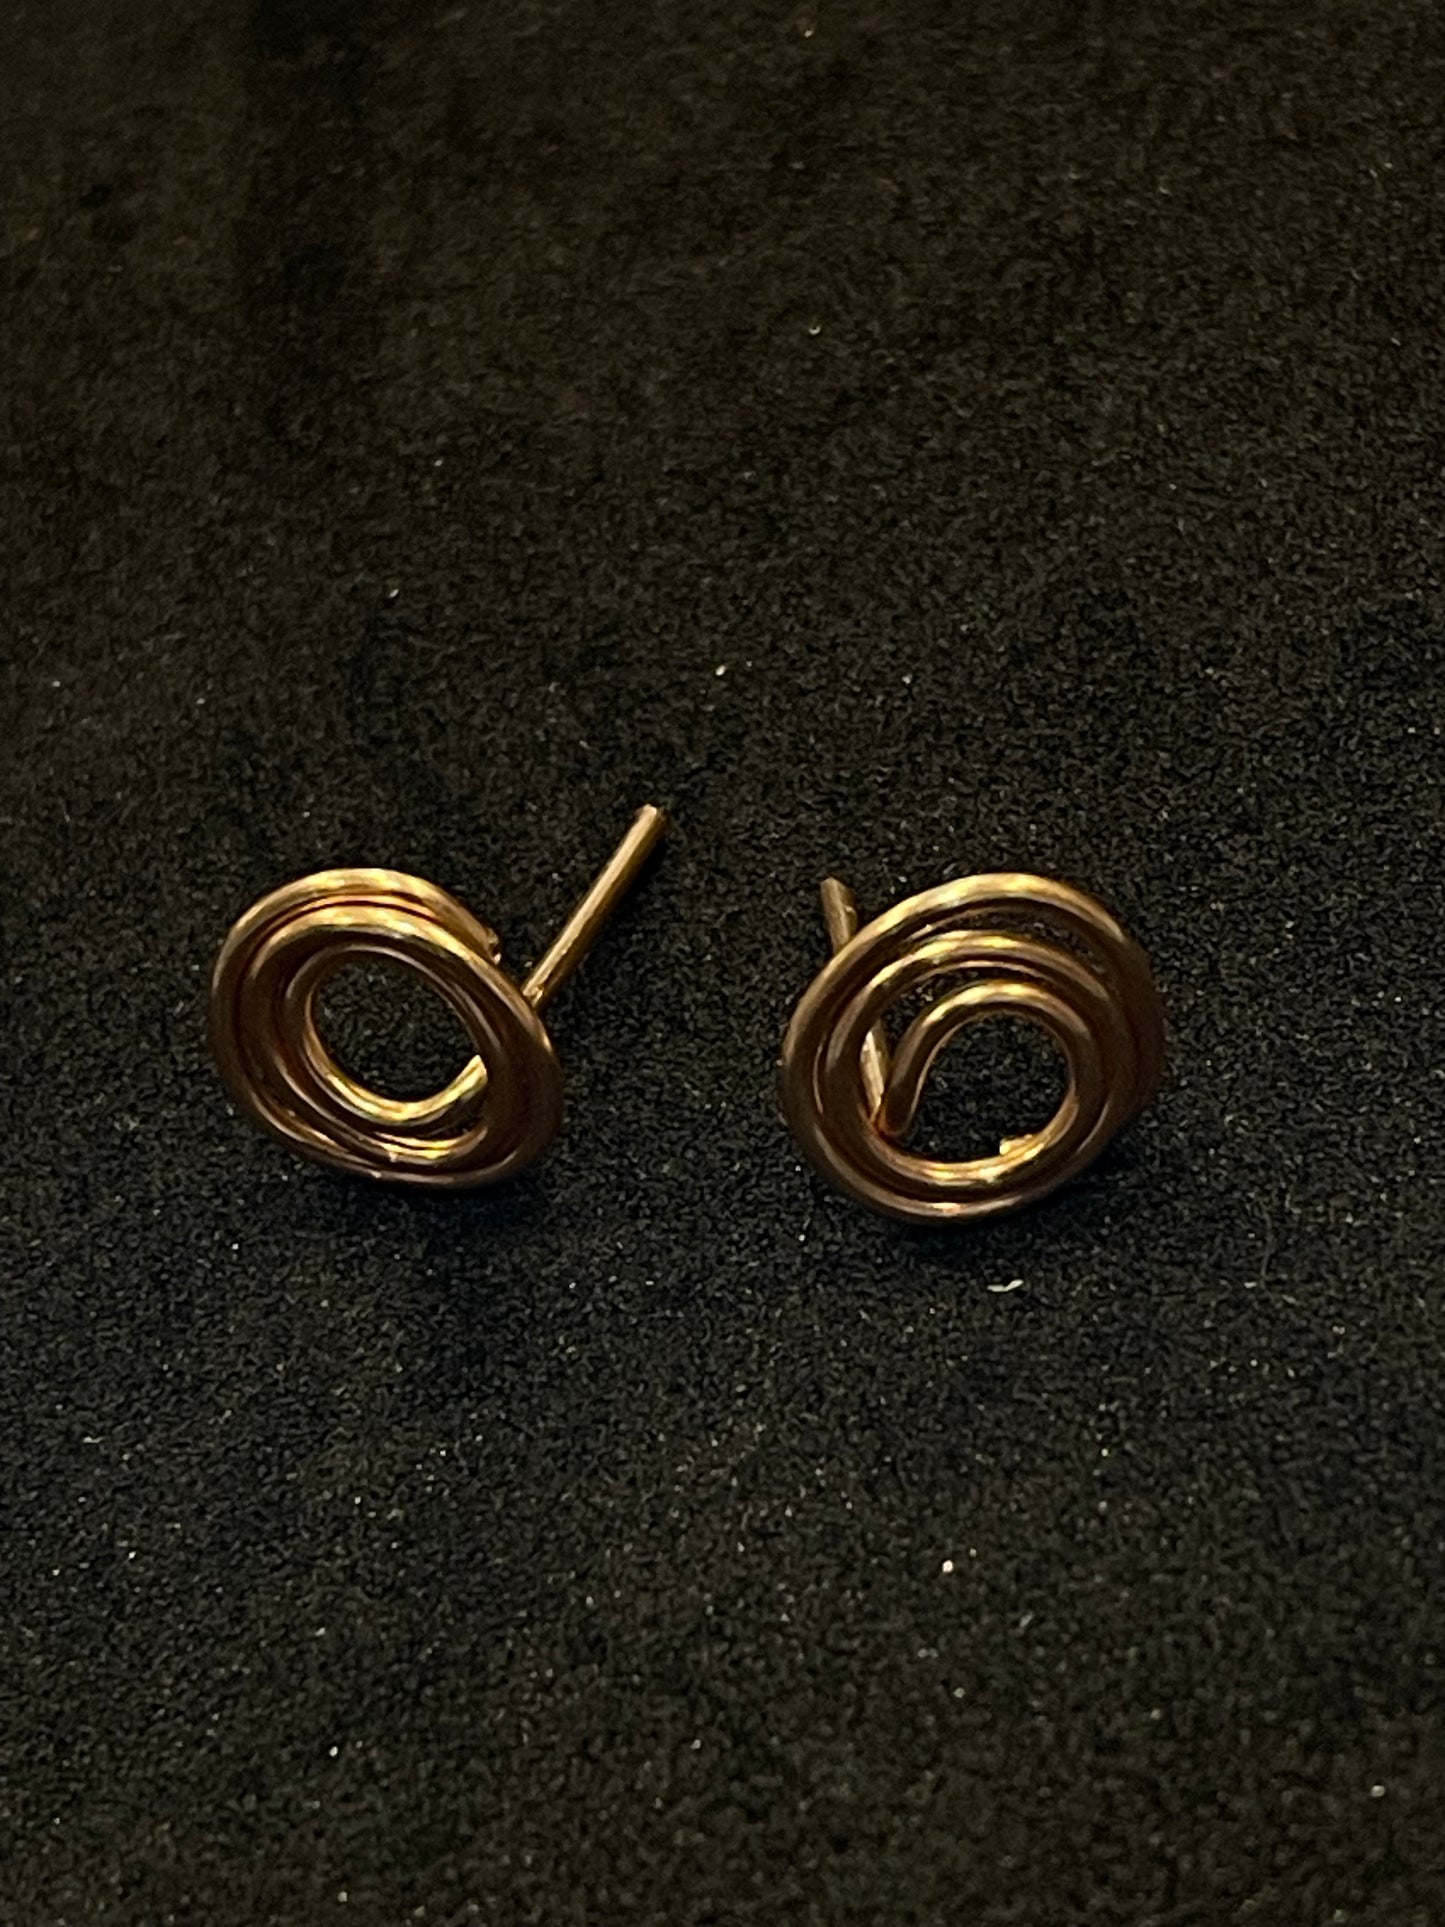 Silver wire ring stud earrings